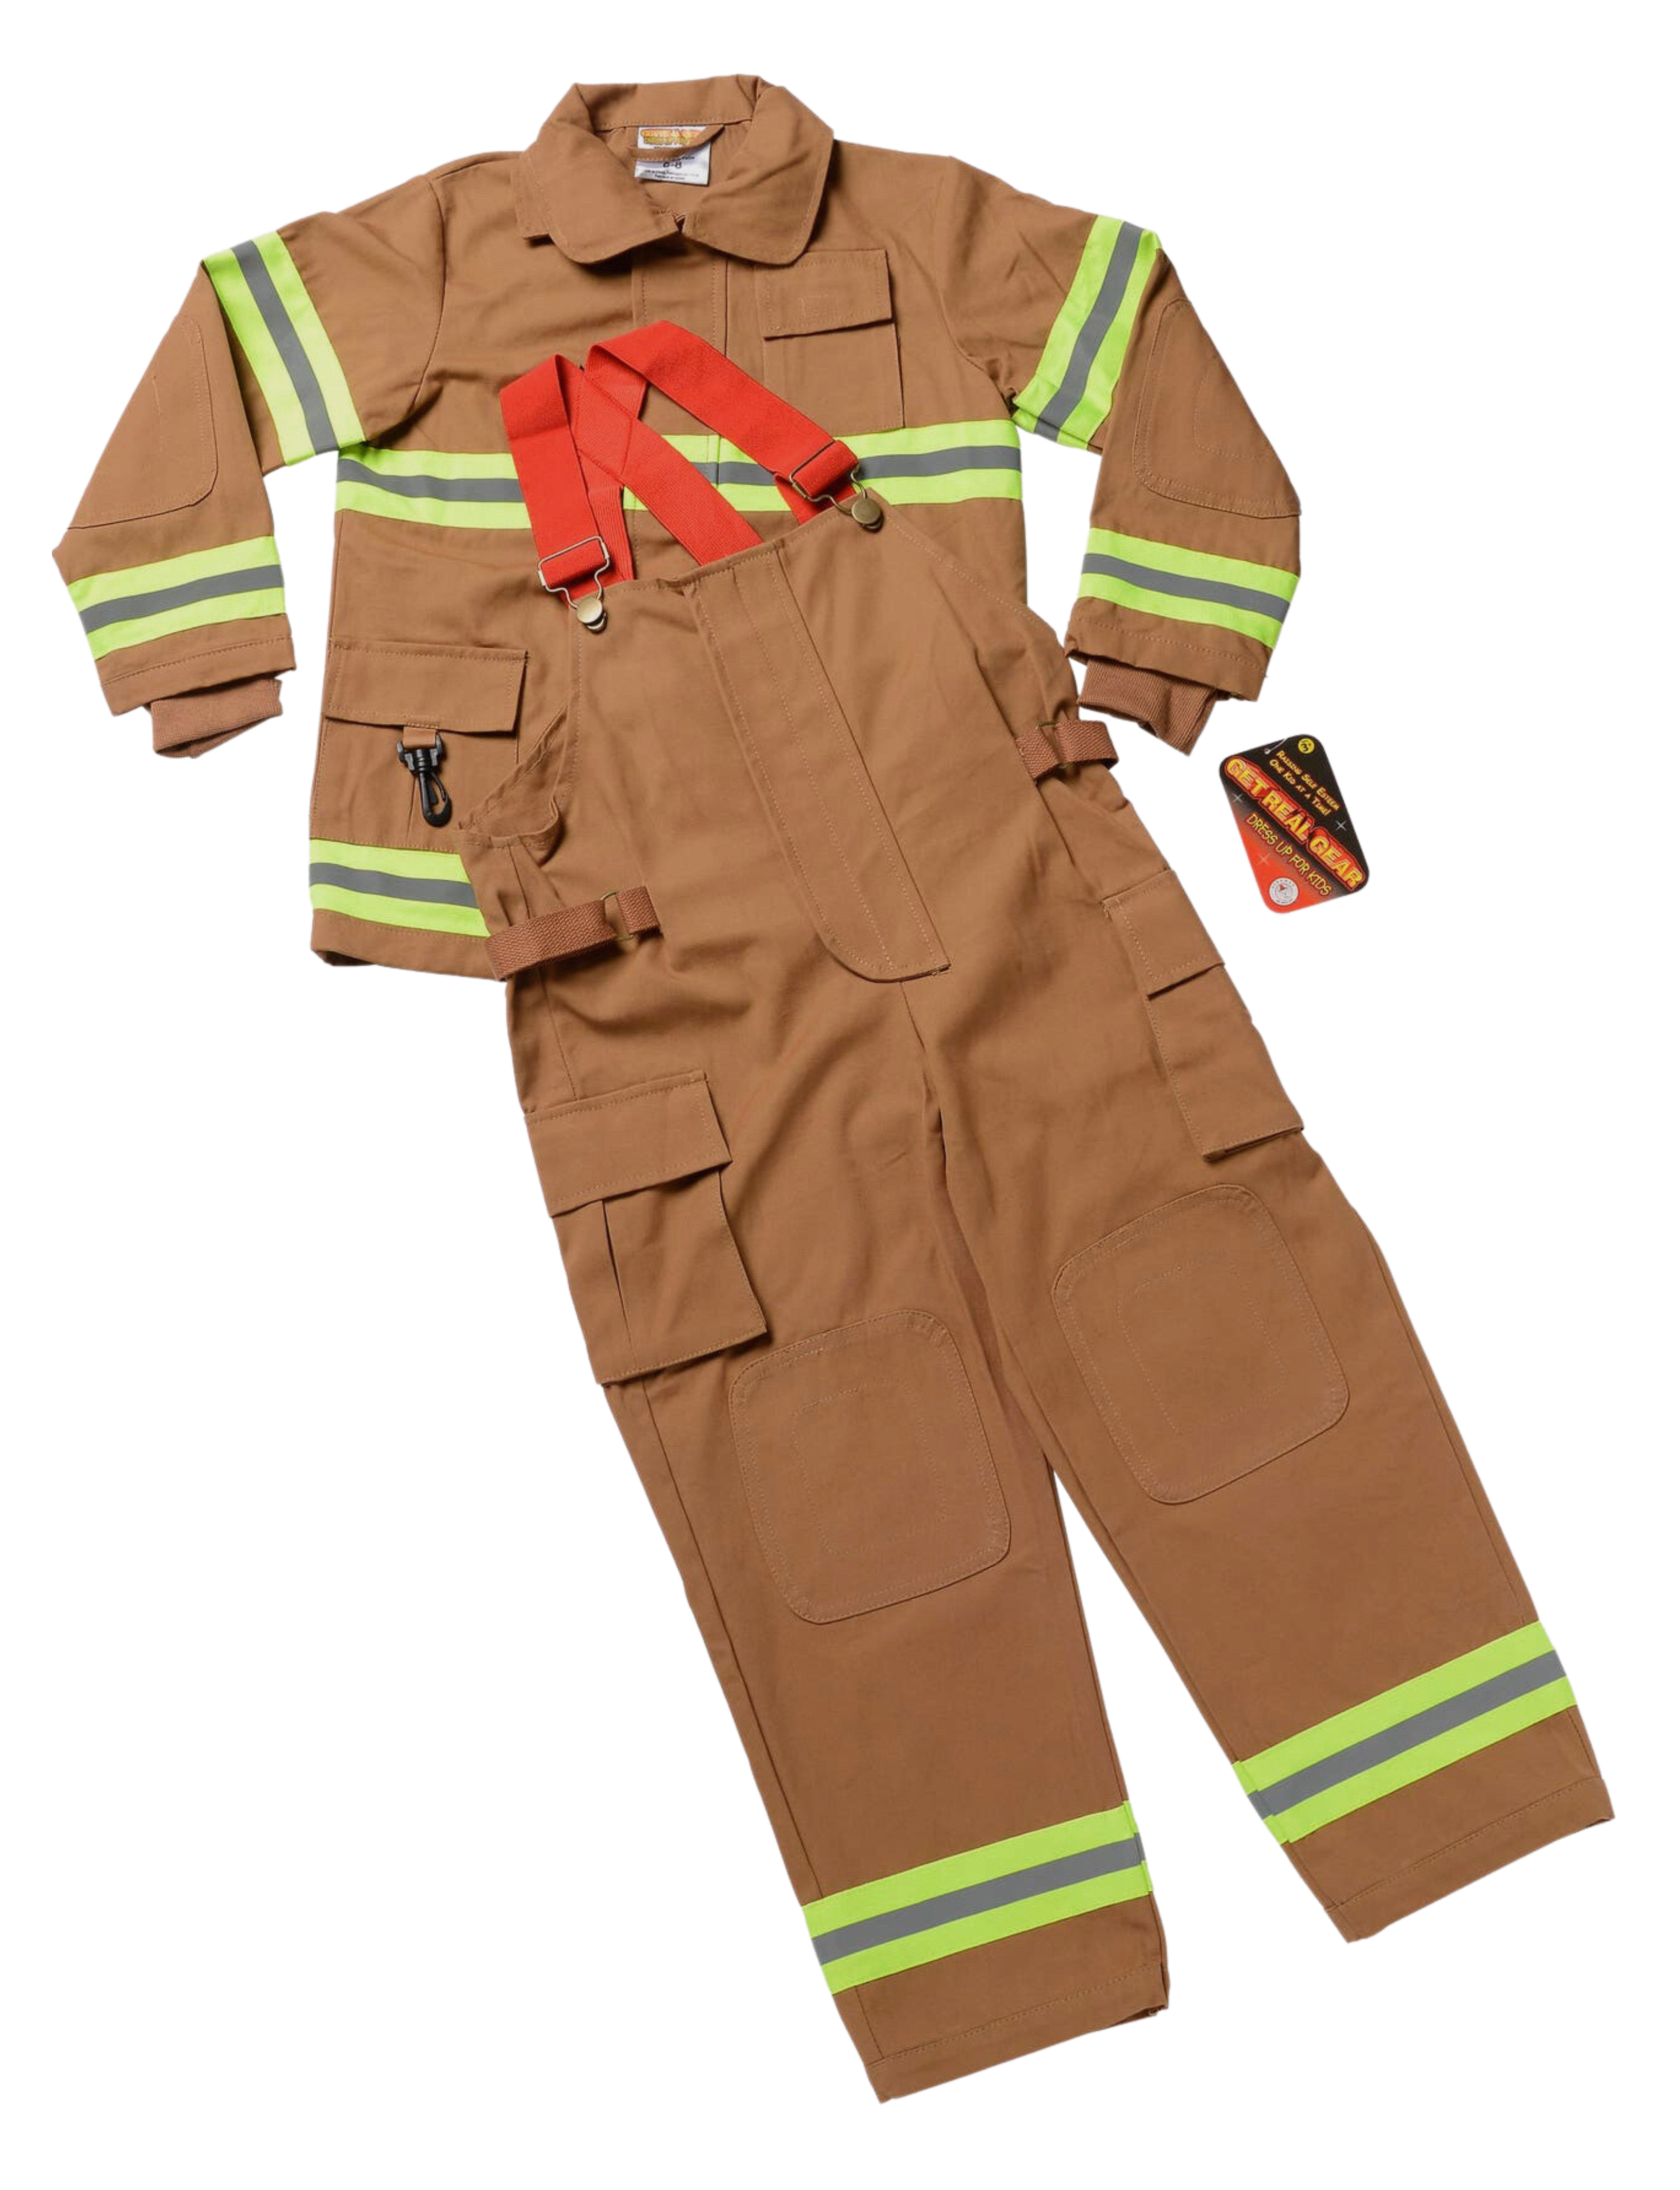 Jr. Firefighter Suit